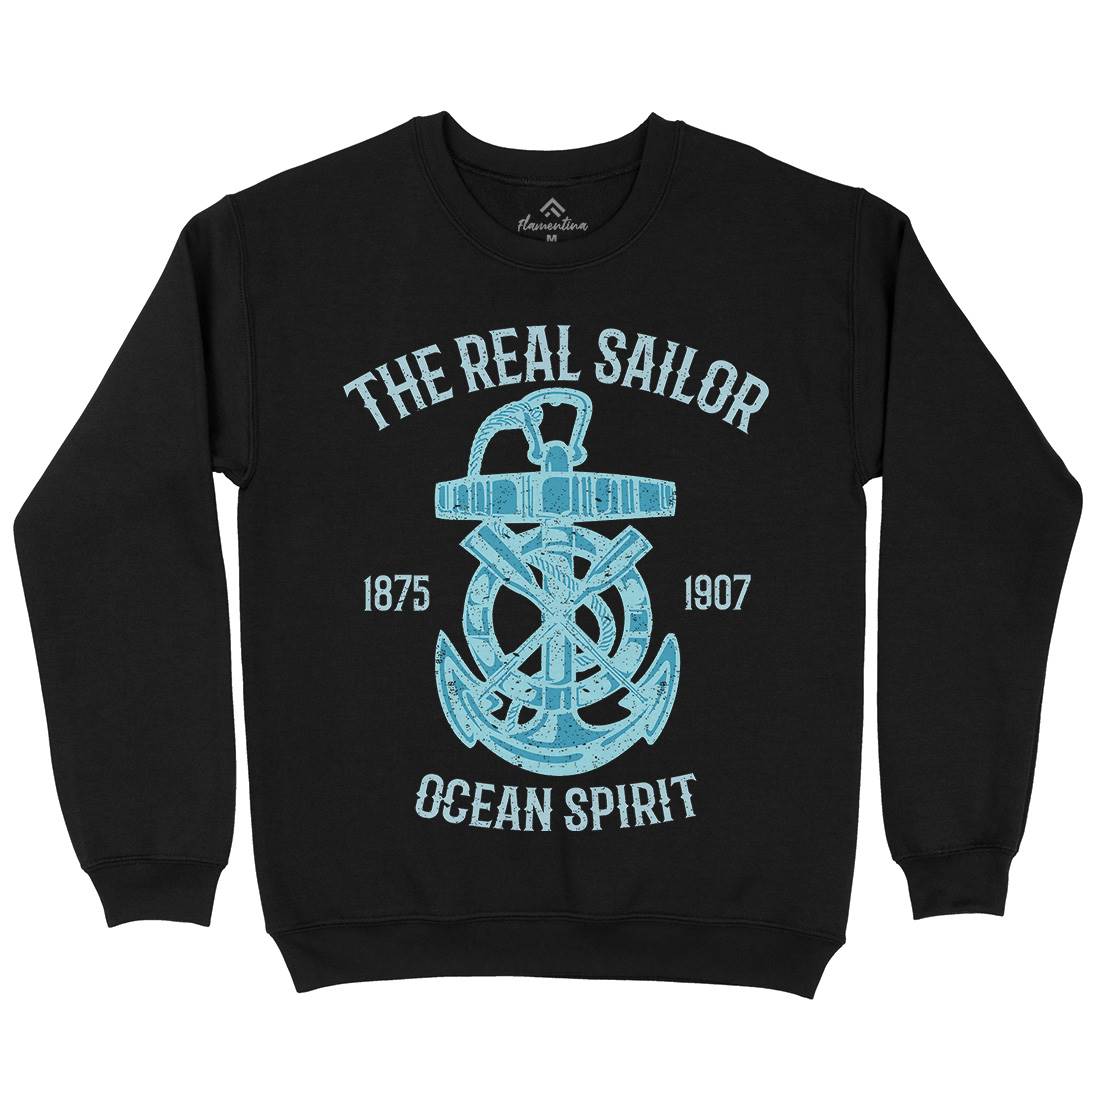 Ocean Spirit Kids Crew Neck Sweatshirt Navy A097